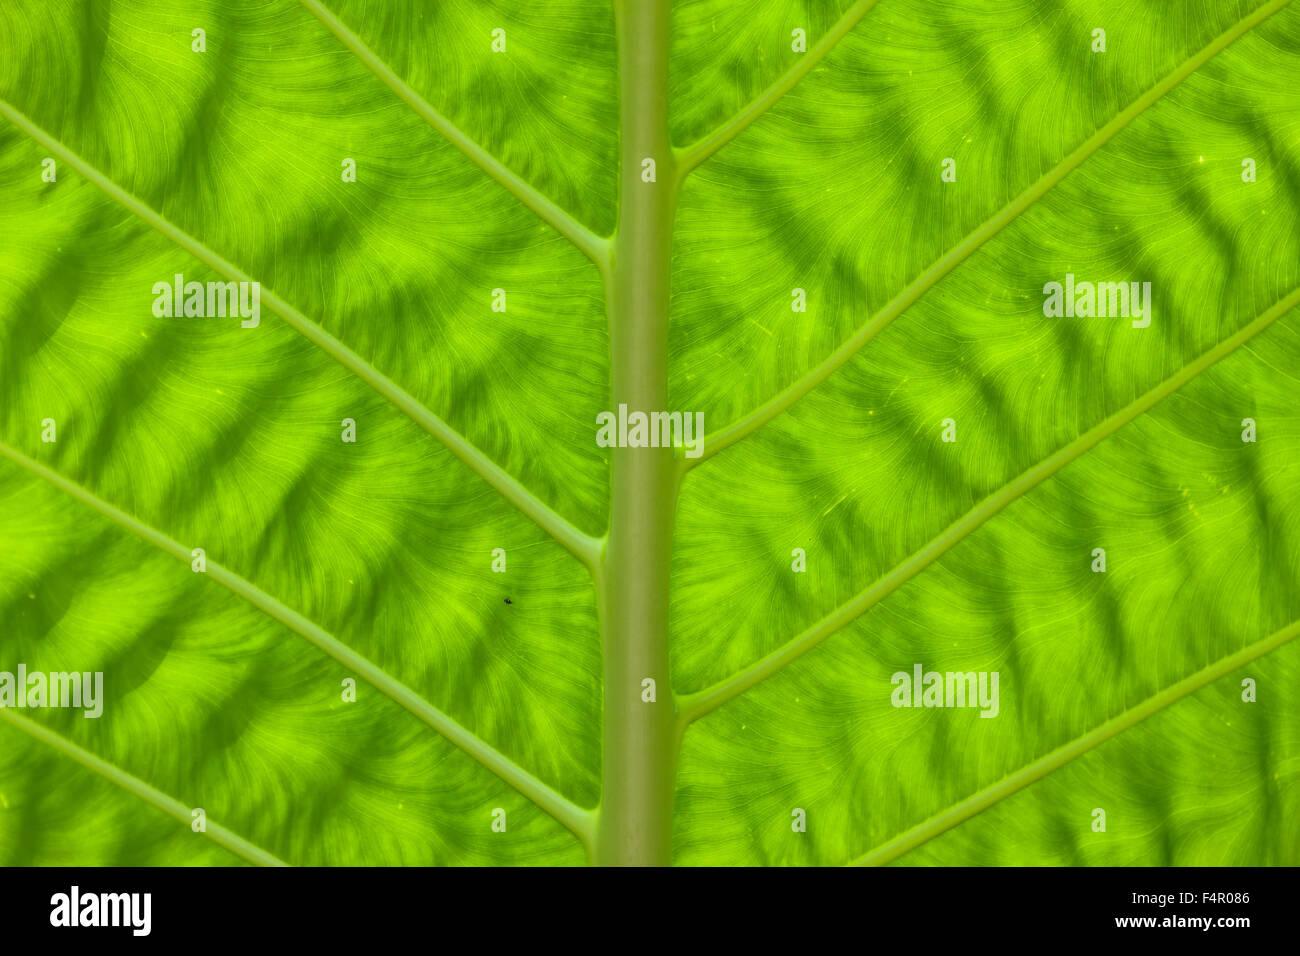 Linien und Muster ON A WILD YAM Blatt parallelen Linien und Muster auf wilde Yamswurzel grünes Blatt mit einem natürlichen Gegenlicht Stockfoto